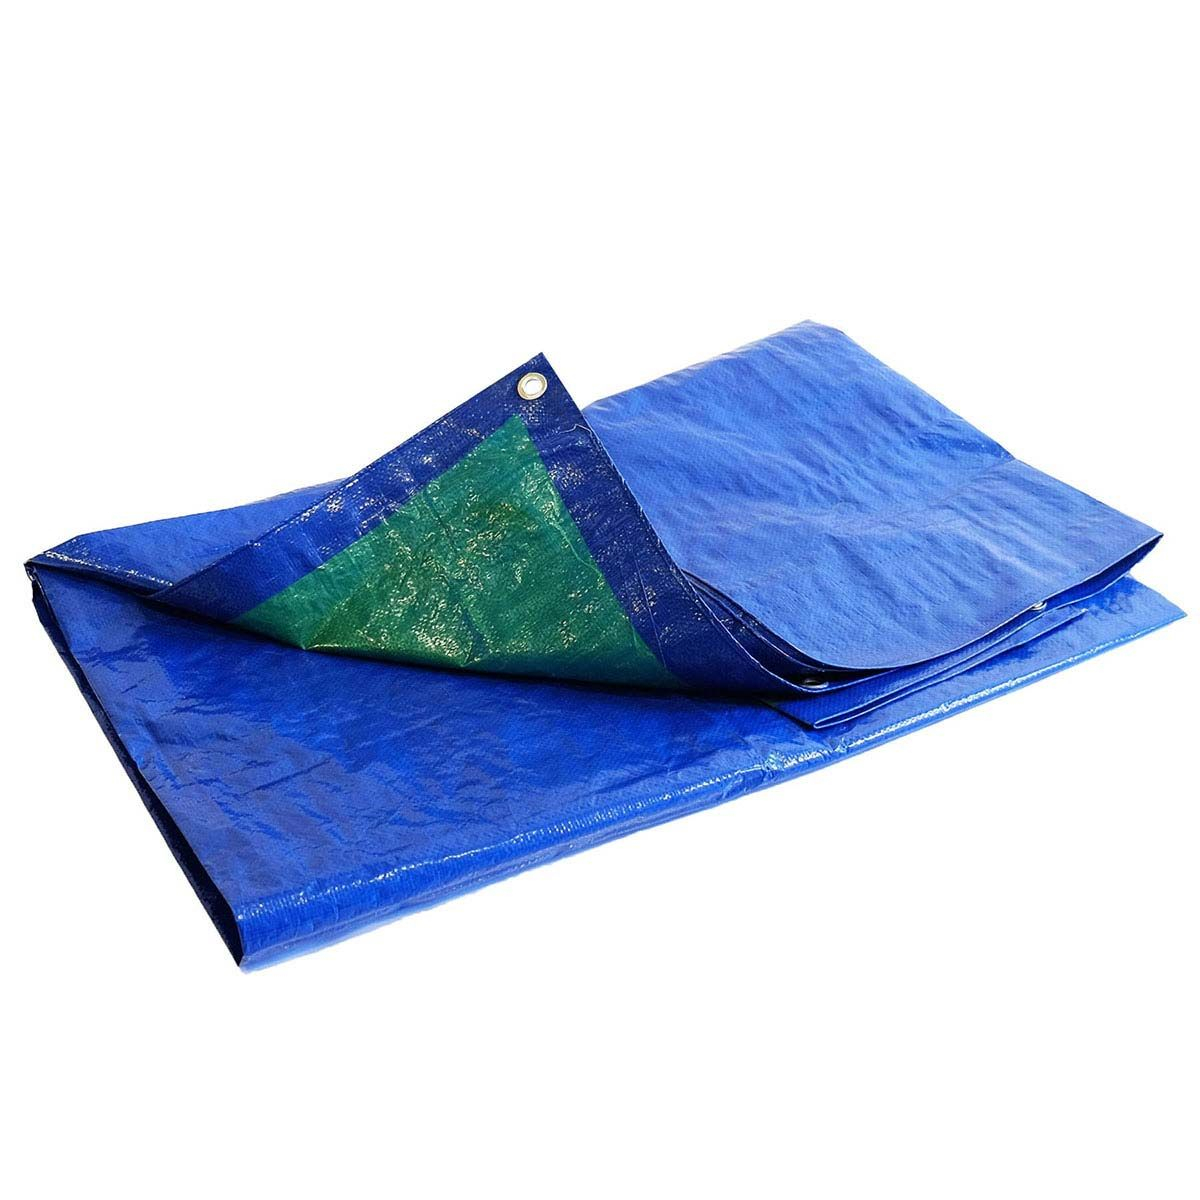 Lona de Protección 6x10 m - TECPLAST 150MU - Azul y Verde - Alta Calidad - Lona  Impermeable con Ojales